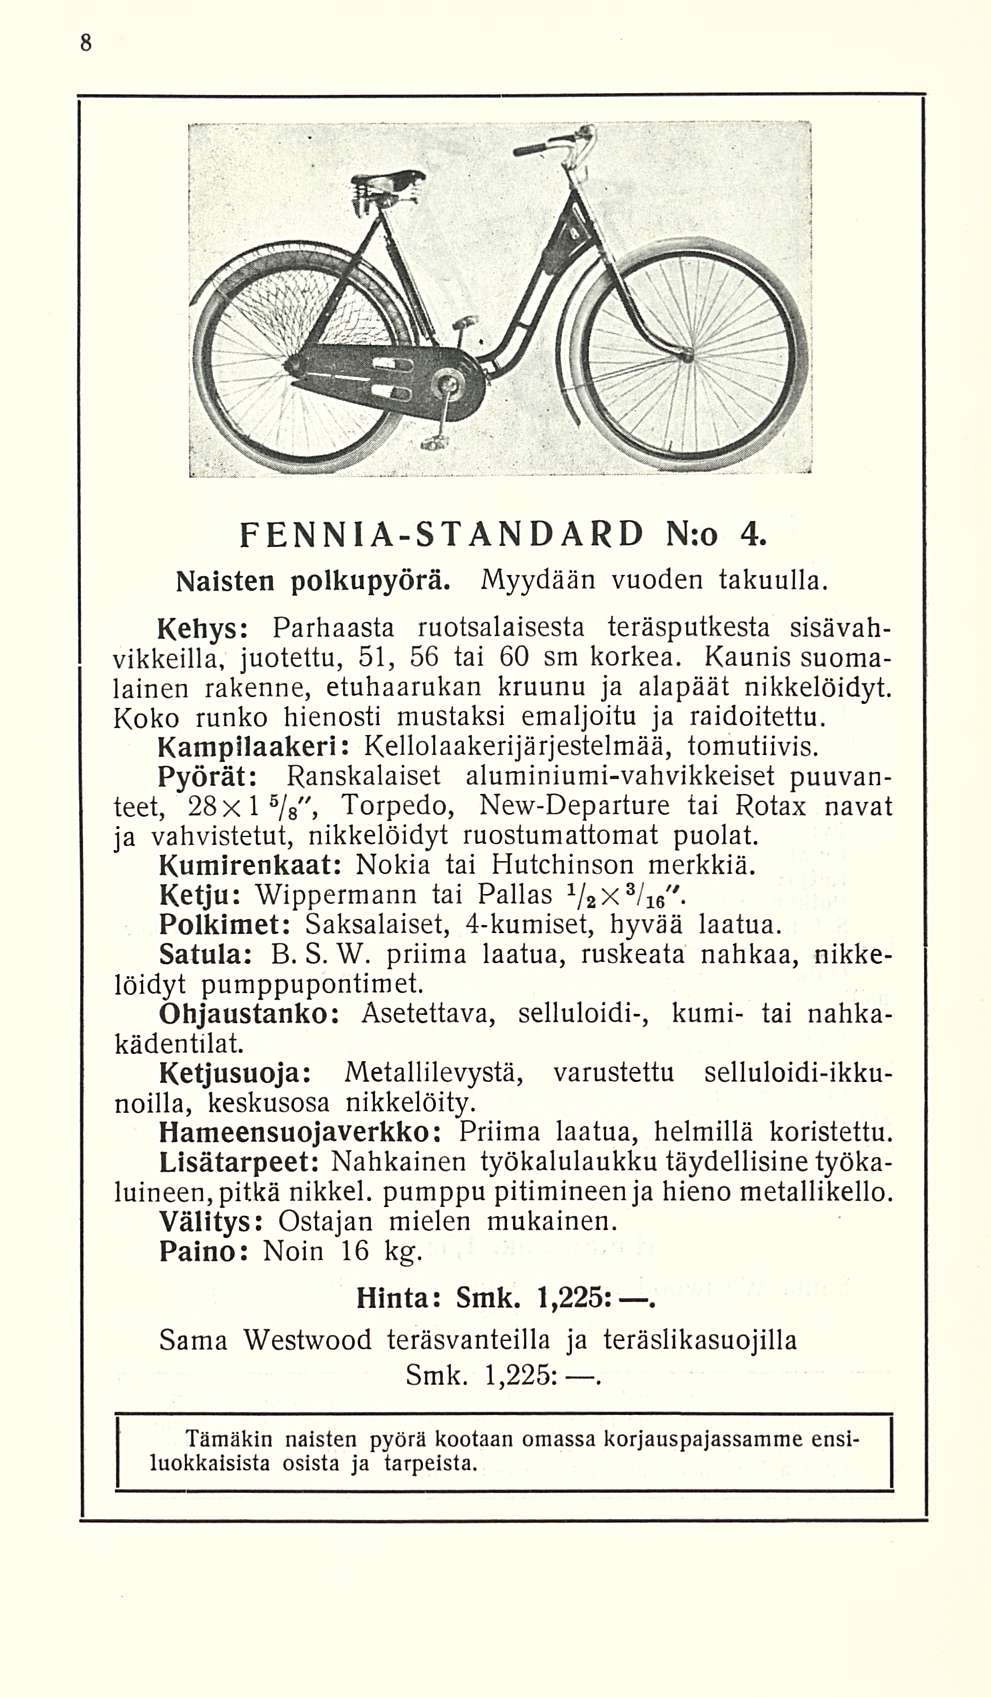 FENNIA-STANDARD N:o 4. Naisten polkupyörä. Myydään vuoden takuulla. Kehys: Parhaasta ruotsalaisesta teräsputkesta sisävahvikkeilla, juotettu, 51, 56 tai 60 sm korkea.